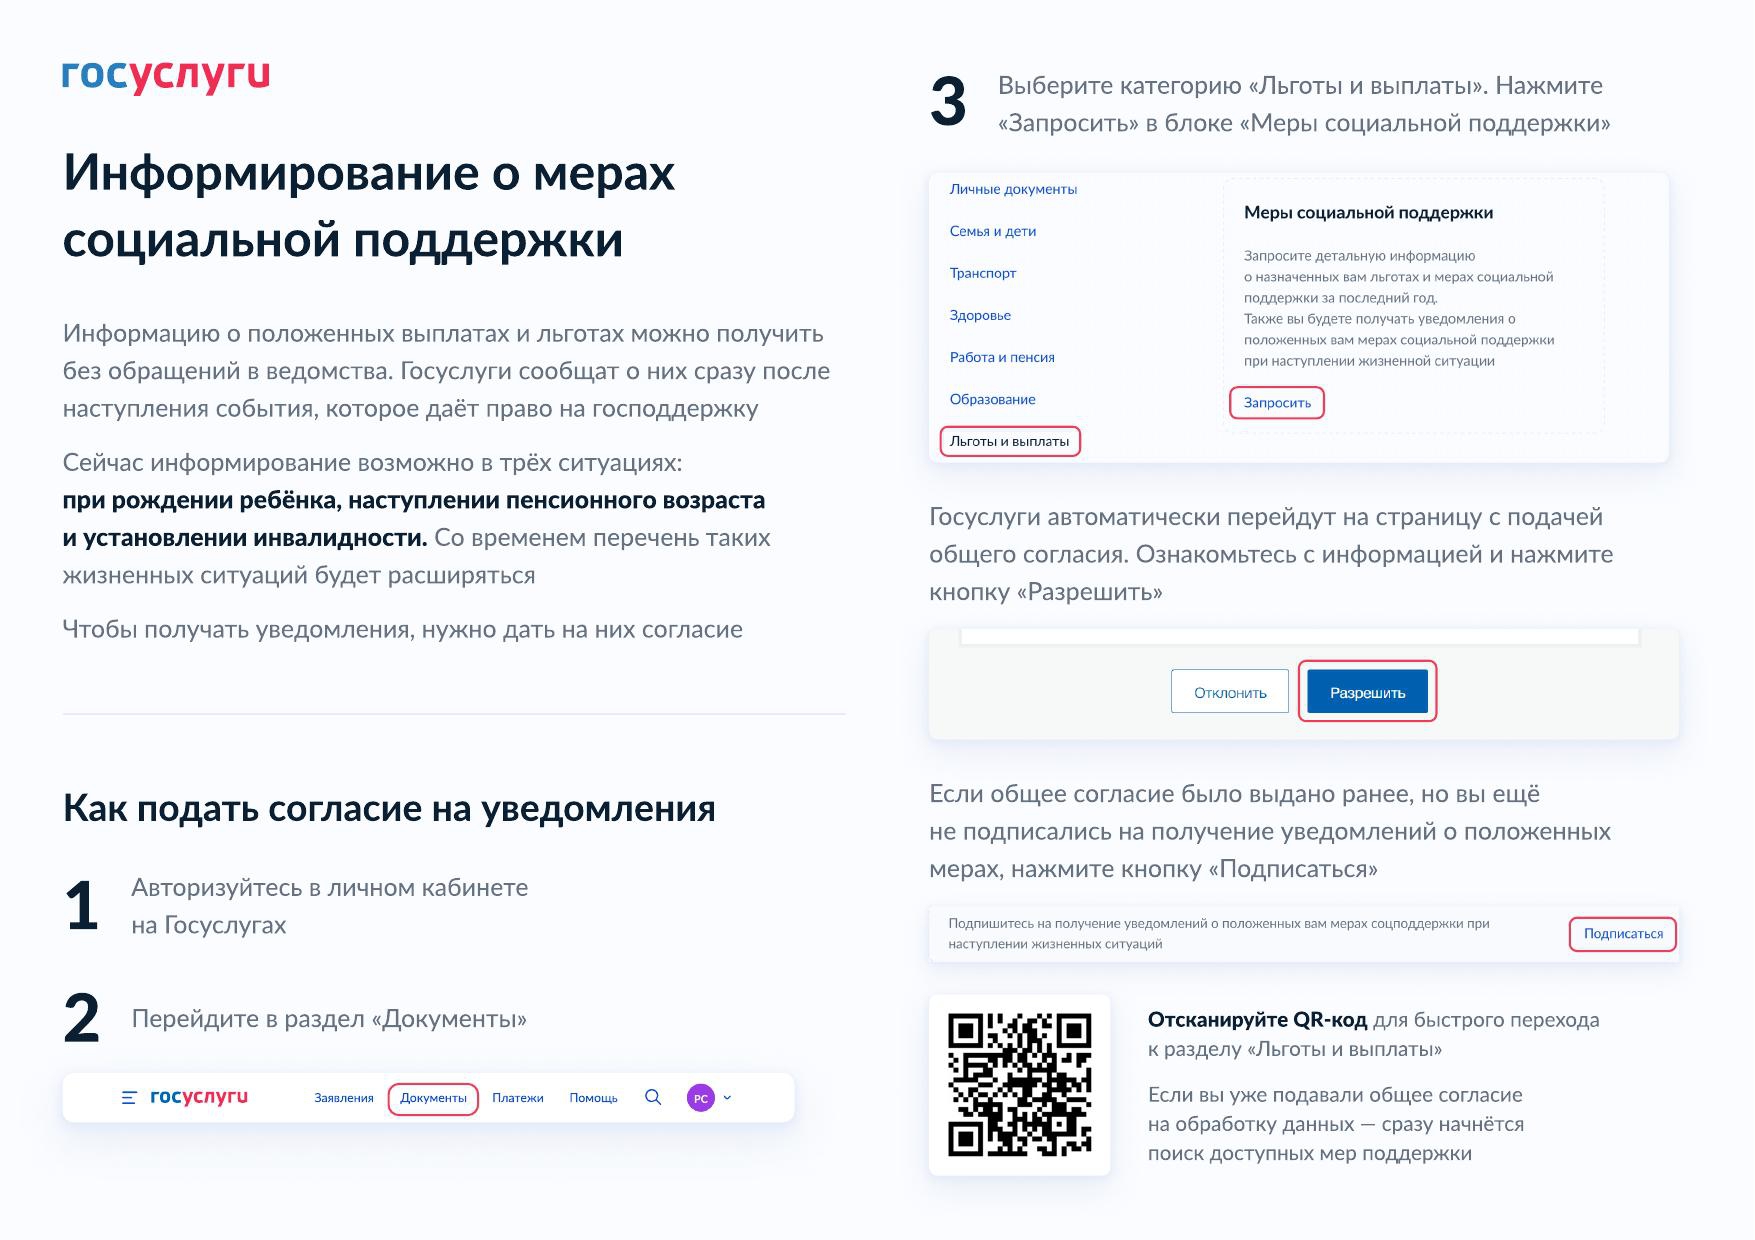 Памятка для граждан по сервису проактивного информирования, подготовленная Министерством труда и социальной защиты Российской Федерации